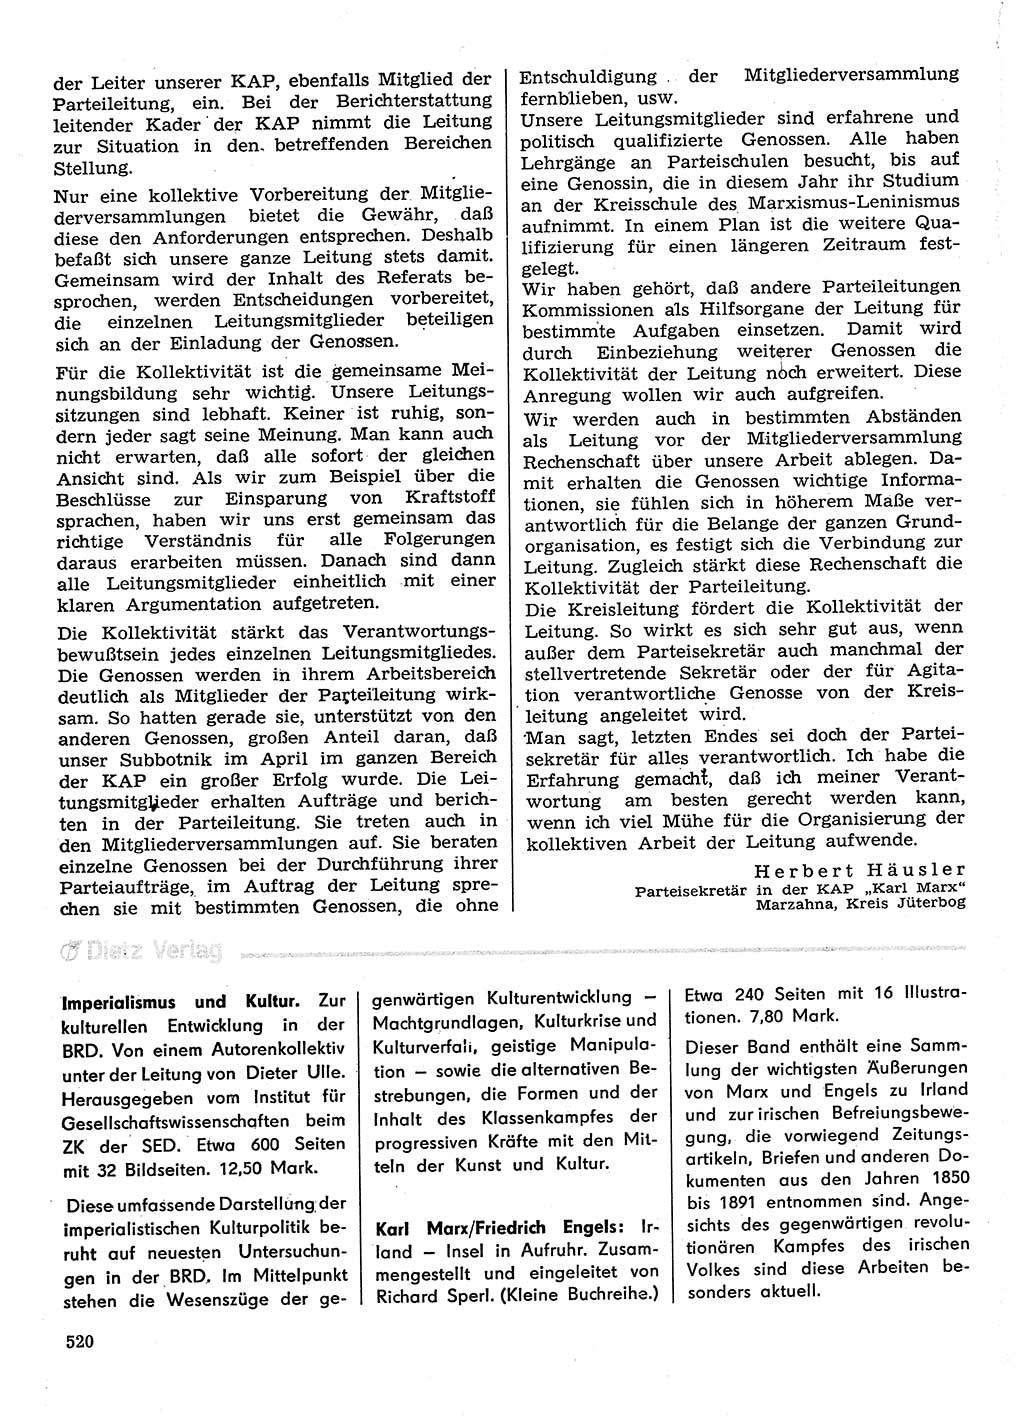 Neuer Weg (NW), Organ des Zentralkomitees (ZK) der SED (Sozialistische Einheitspartei Deutschlands) für Fragen des Parteilebens, 30. Jahrgang [Deutsche Demokratische Republik (DDR)] 1975, Seite 520 (NW ZK SED DDR 1975, S. 520)